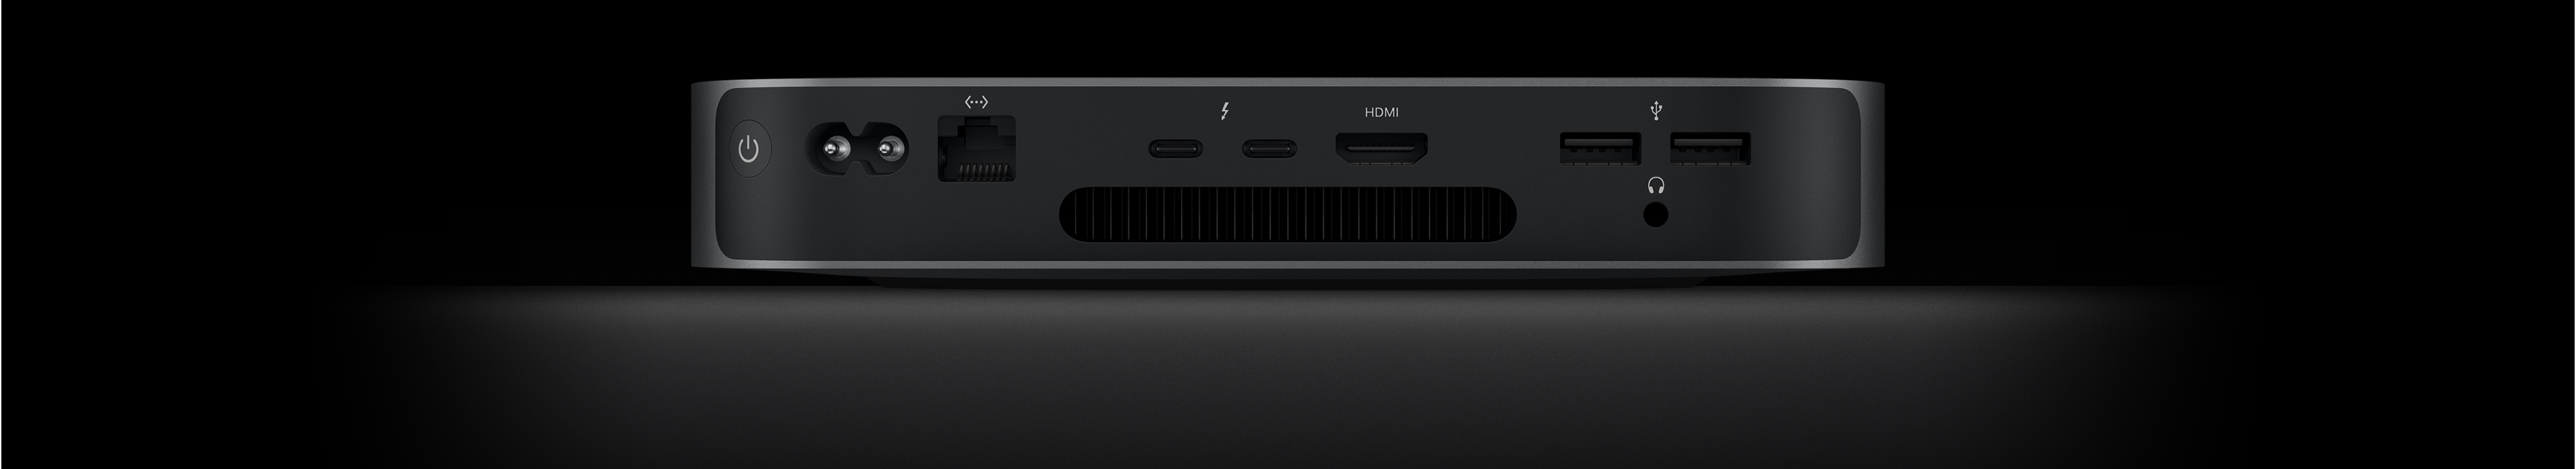 Vue arrière de Mac mini montrant les deux ports Thunderbolt 4, les port HDMI, les deux ports USB-A, la prise pour écouteurs, le port Gigabit Ethernet, le port d’alimentation et le bouton de mise en marche.